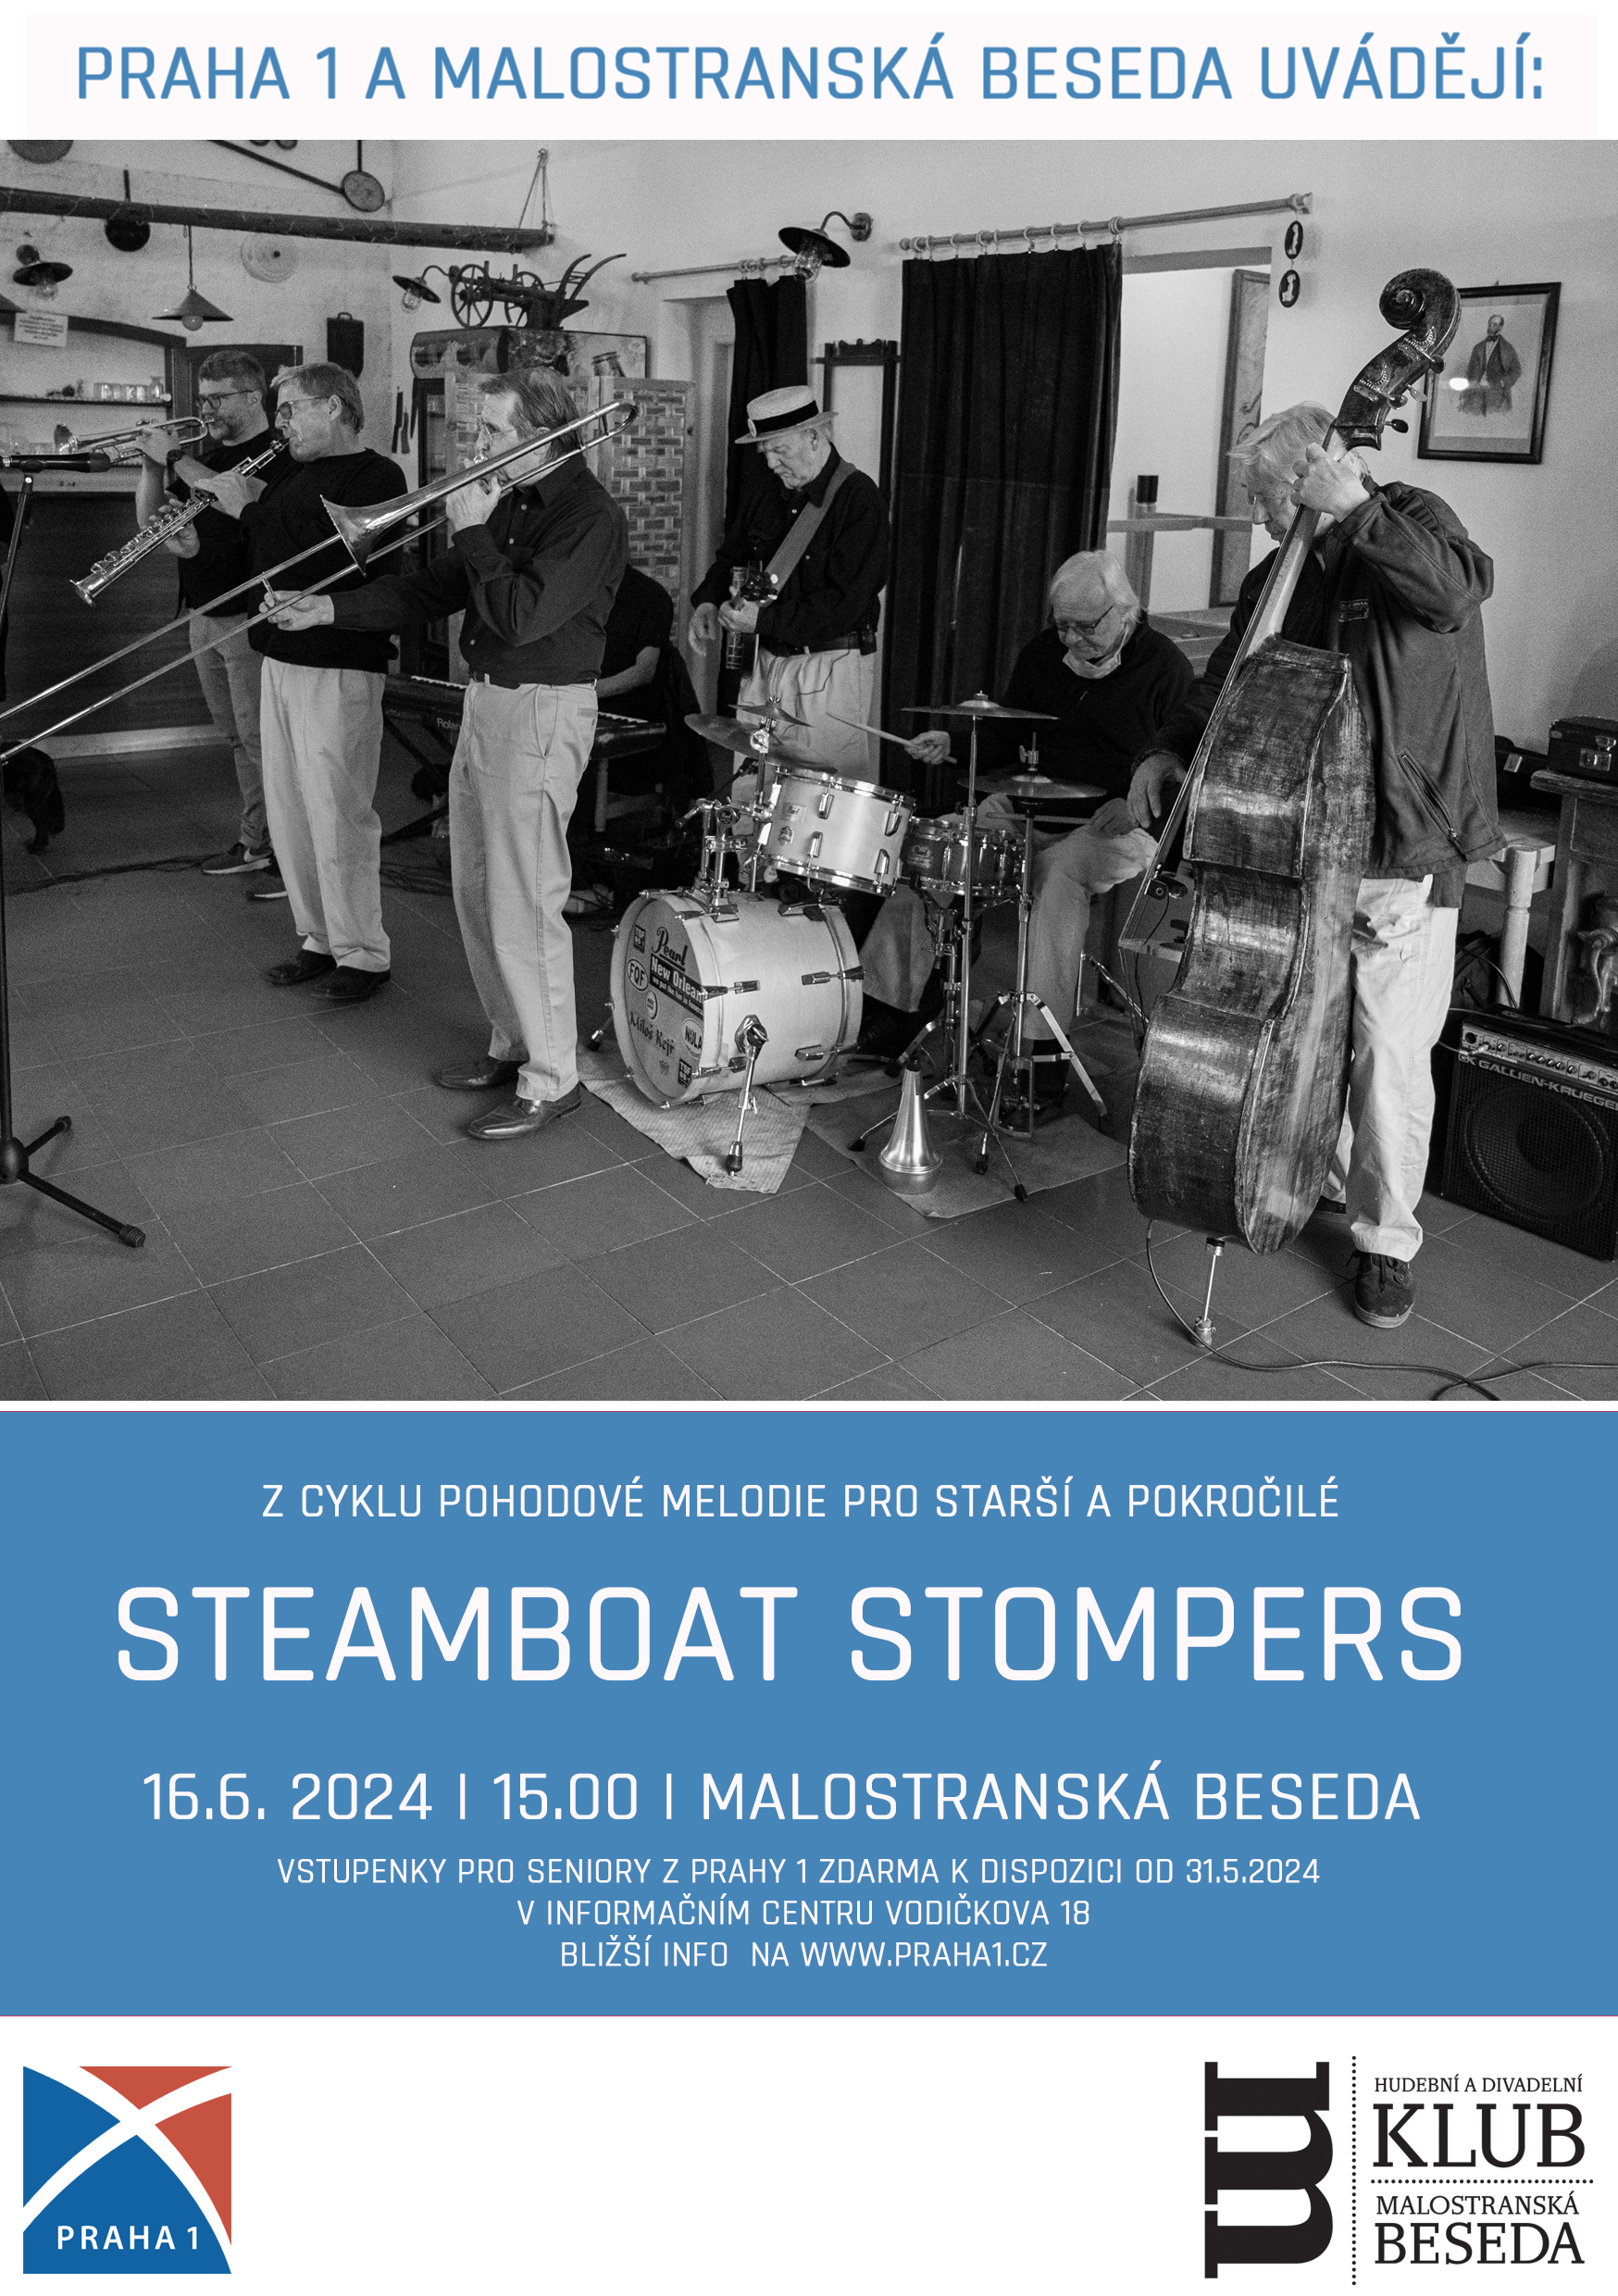 Pohodové melodie pro starší a pokročilé - Steamboat Stompers